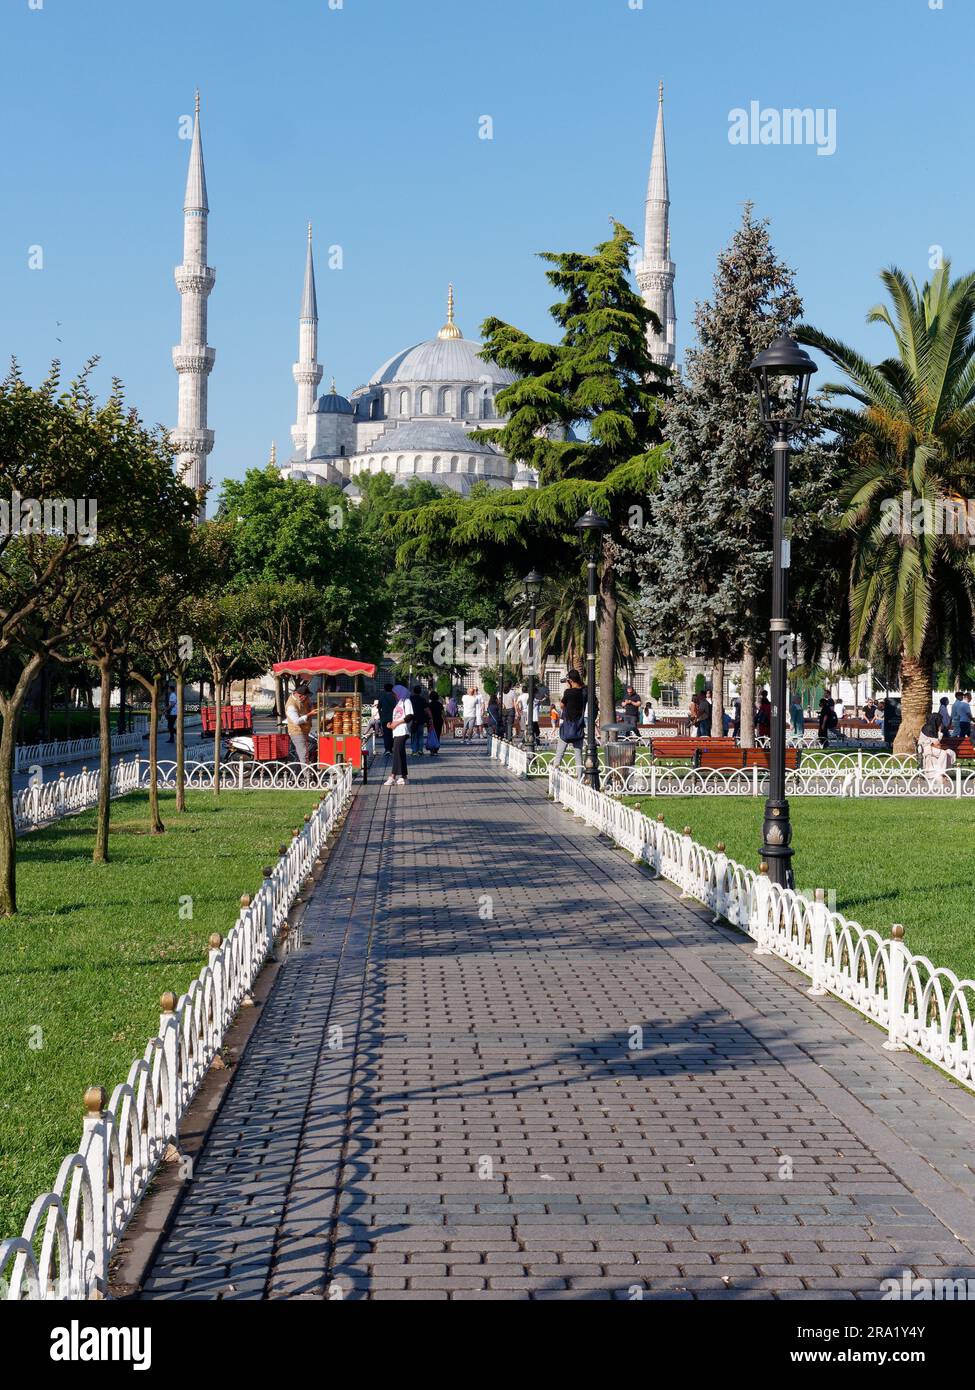 Gärten und Rote Karren, die Simits aka türkische Bagels verkaufen, mit der Sultan Ahmed aka Blaue Moschee dahinter, Sultanahmet Viertel, Istanbul, Türkei Stockfoto